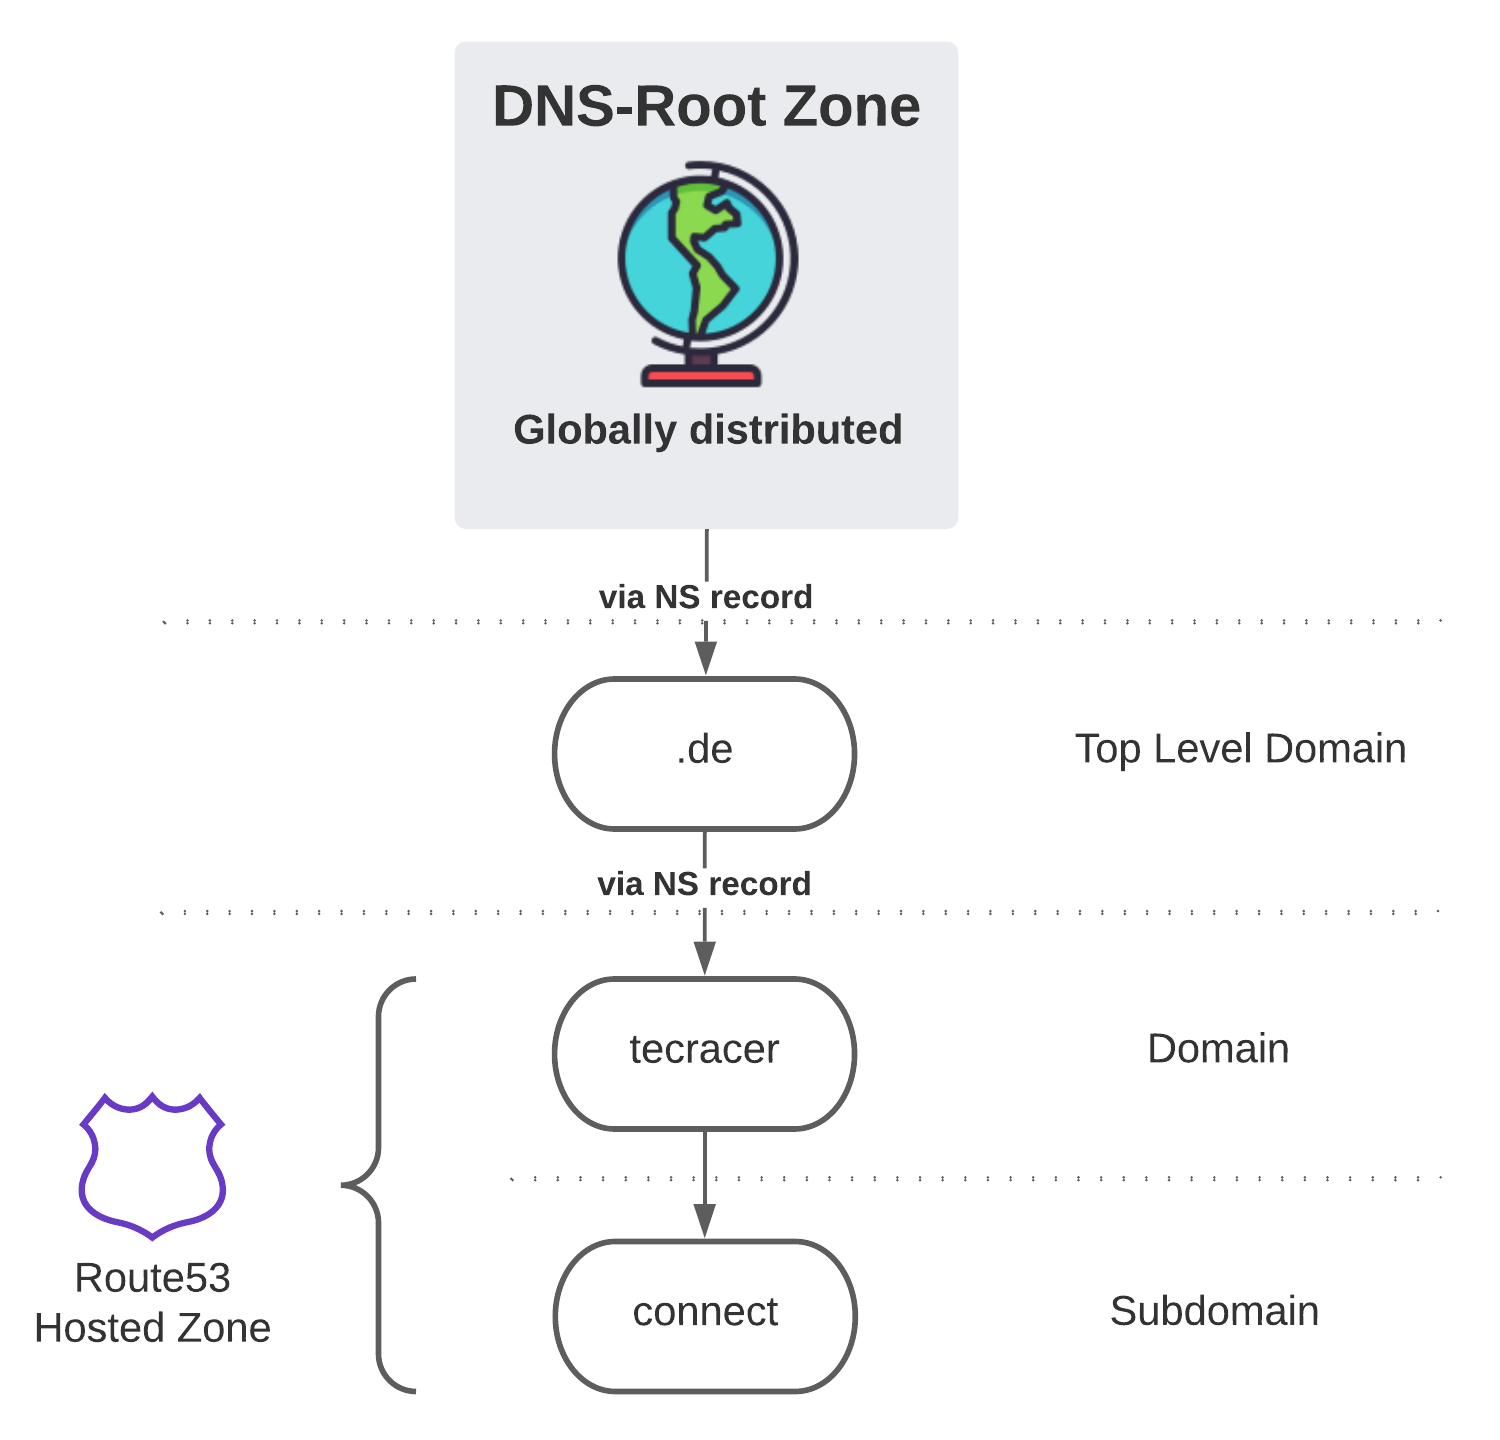 DNS Hierarchy